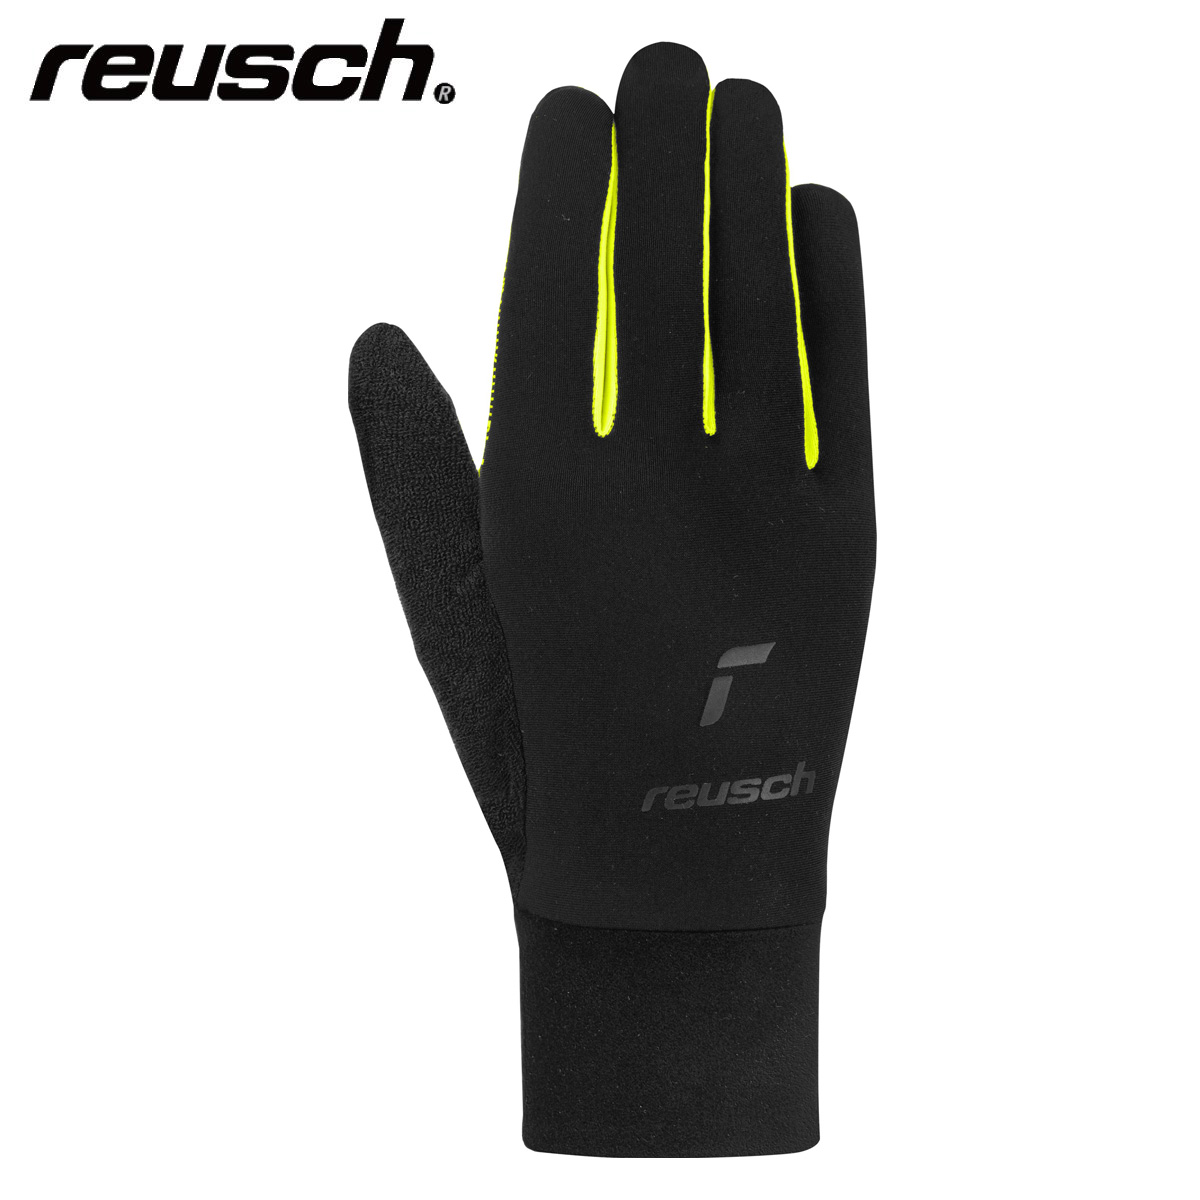 Ski Glove】REUSCH - Ski Gear - Top Shop Skiwear Ski Japanese Retailer Brand Sports Tanabe and 